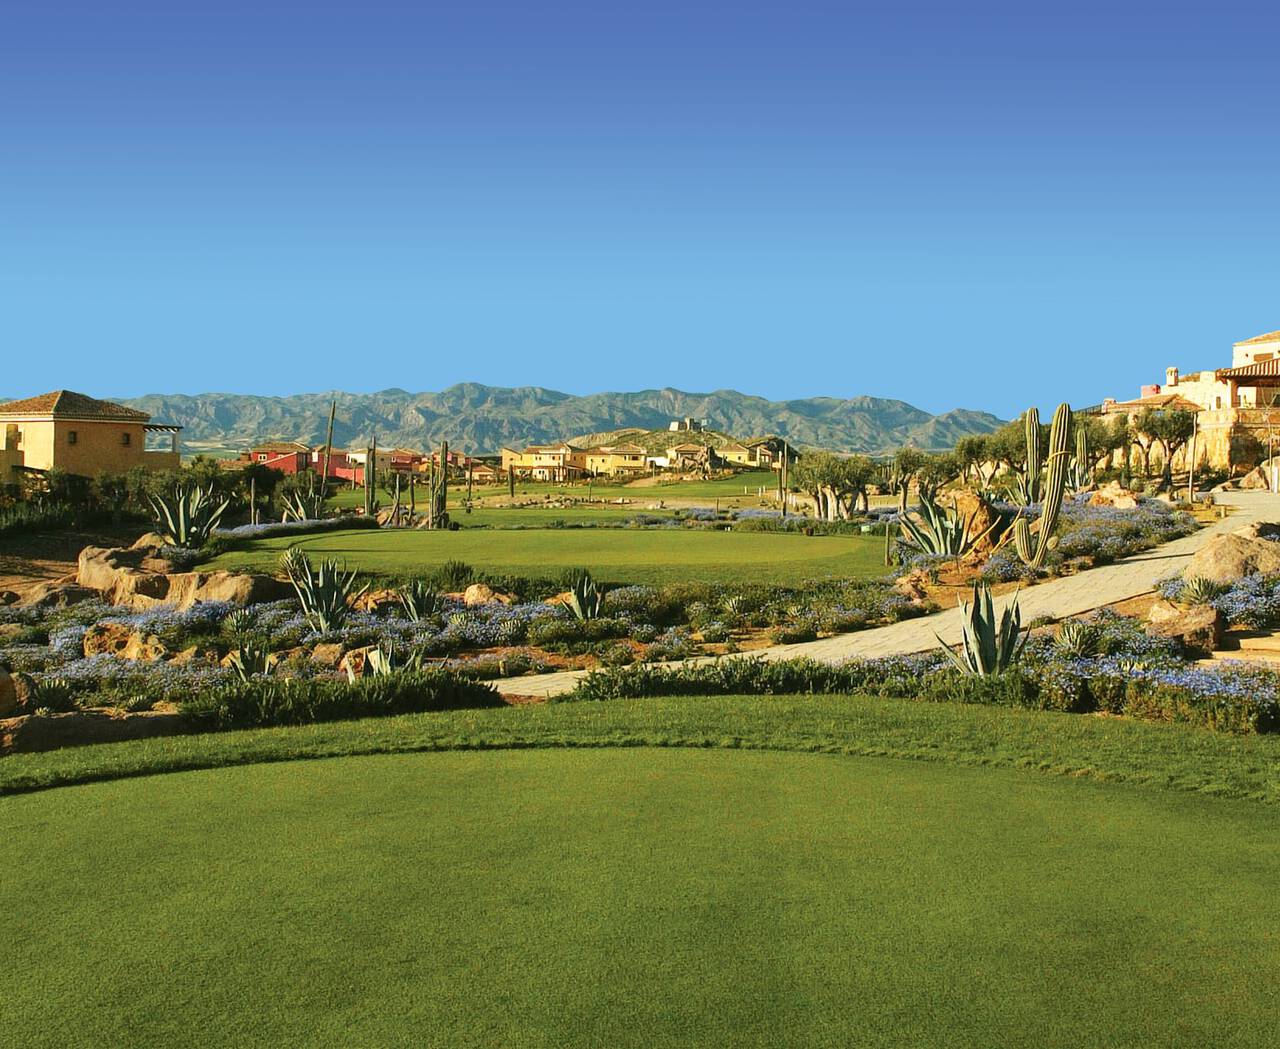 Desert Springs Golf Club, Palomares, s/n, Cuevas del Almanzora (Almería),  Spain - Albrecht Golf Guide